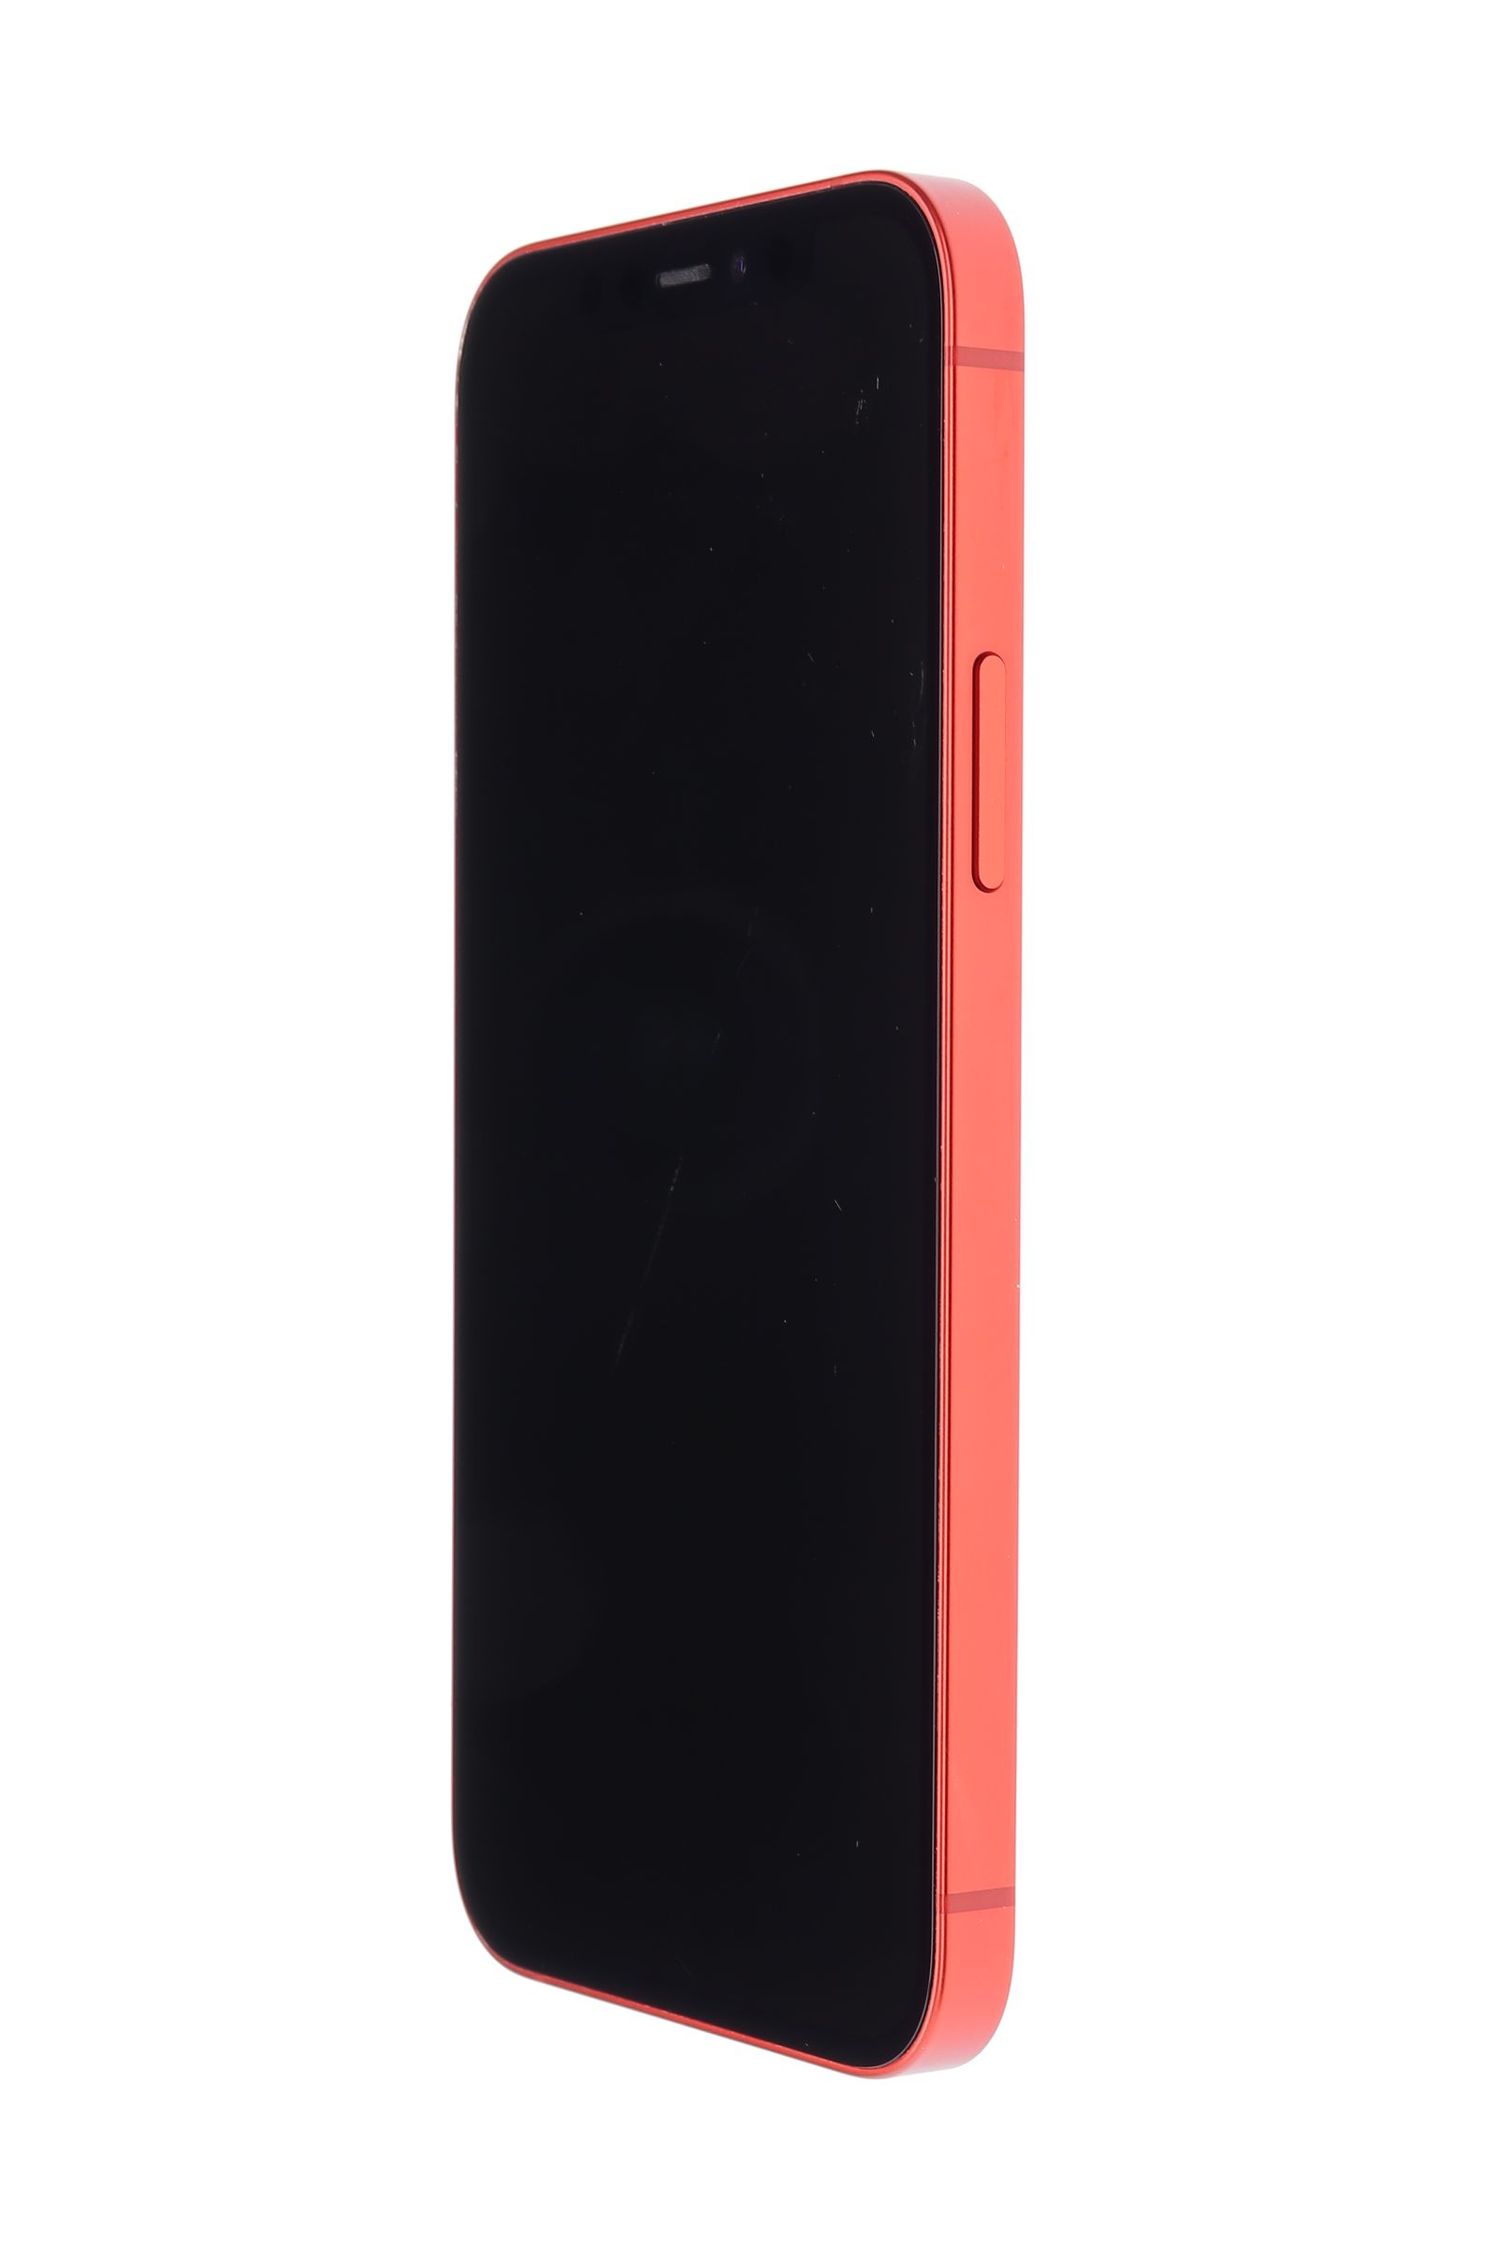 Mobiltelefon Apple iPhone 12, Red, 64 GB, Foarte Bun